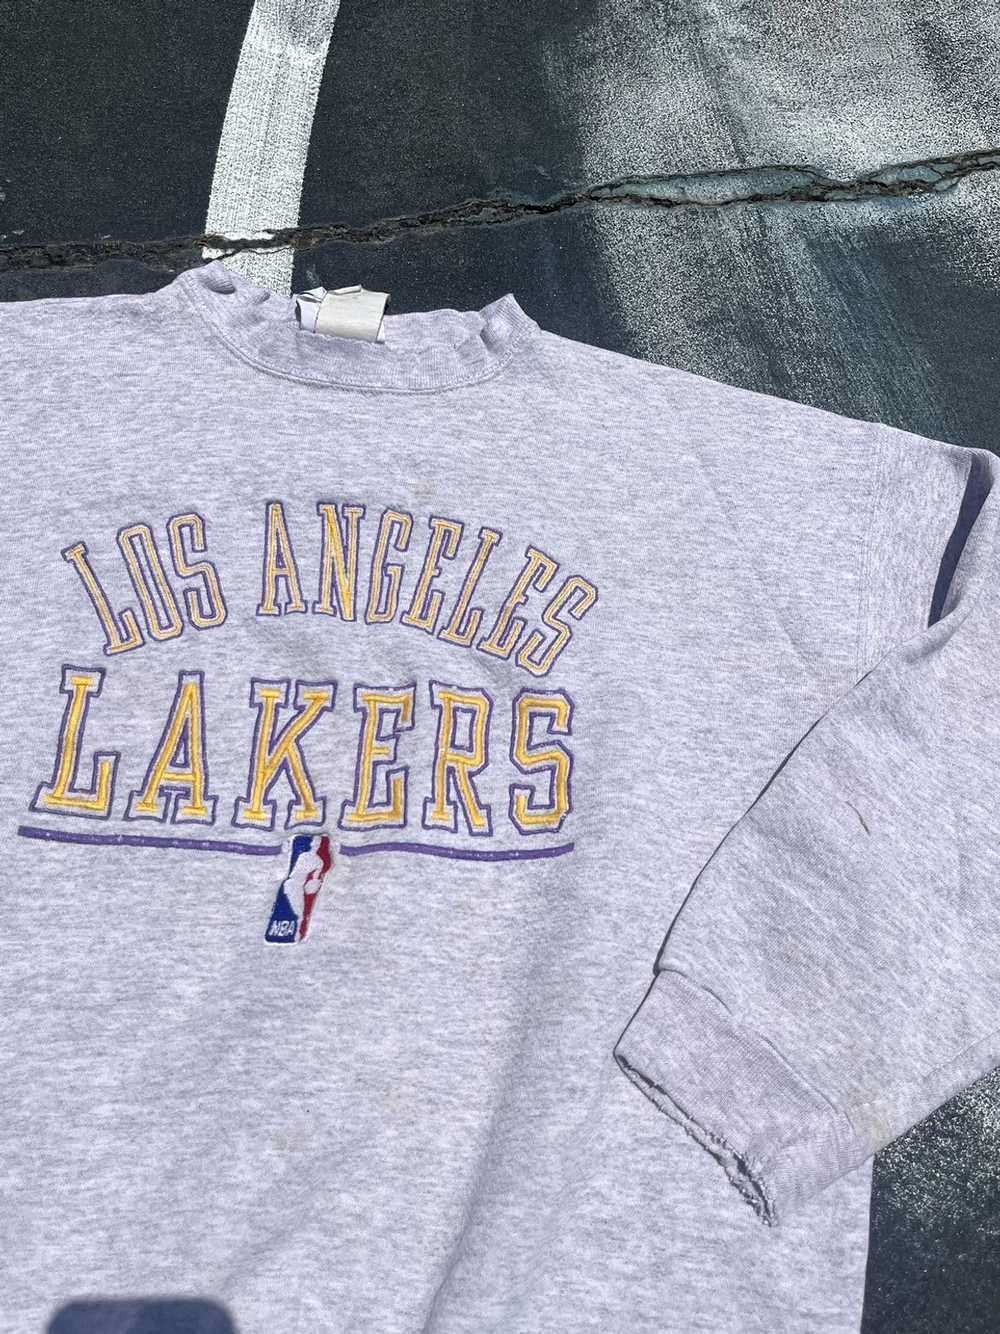 VINTAGE NIKE NBA LOS ANGELES LAKERS HOODIE SWEATSHIRT SIZE XL 1990s